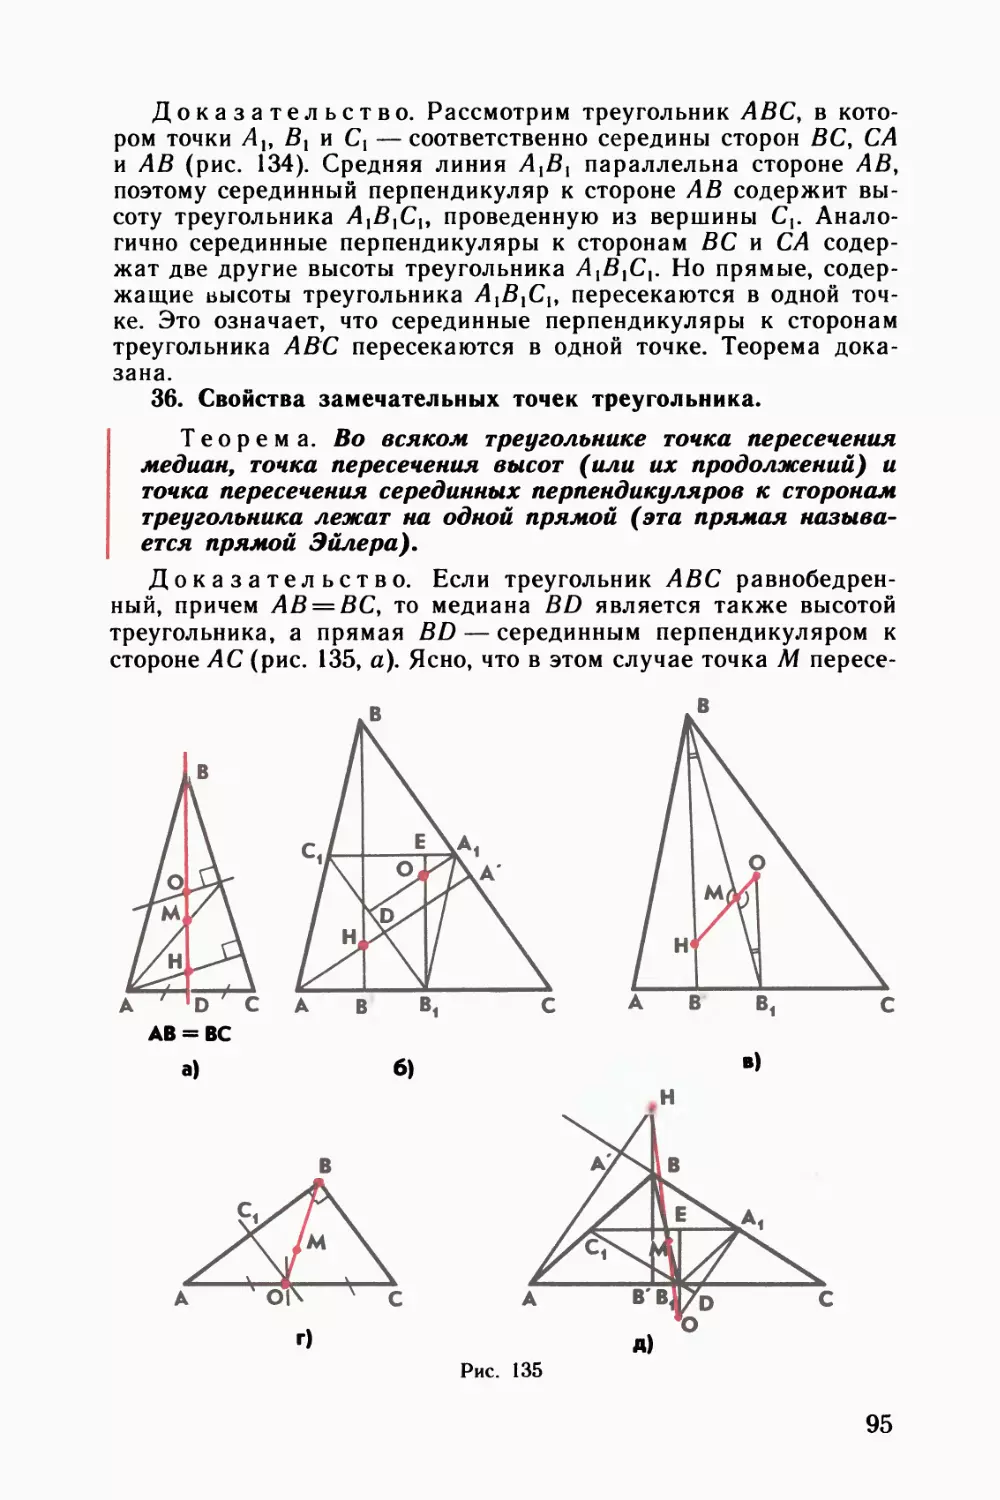 36. Свойства замечательных точек треугольника